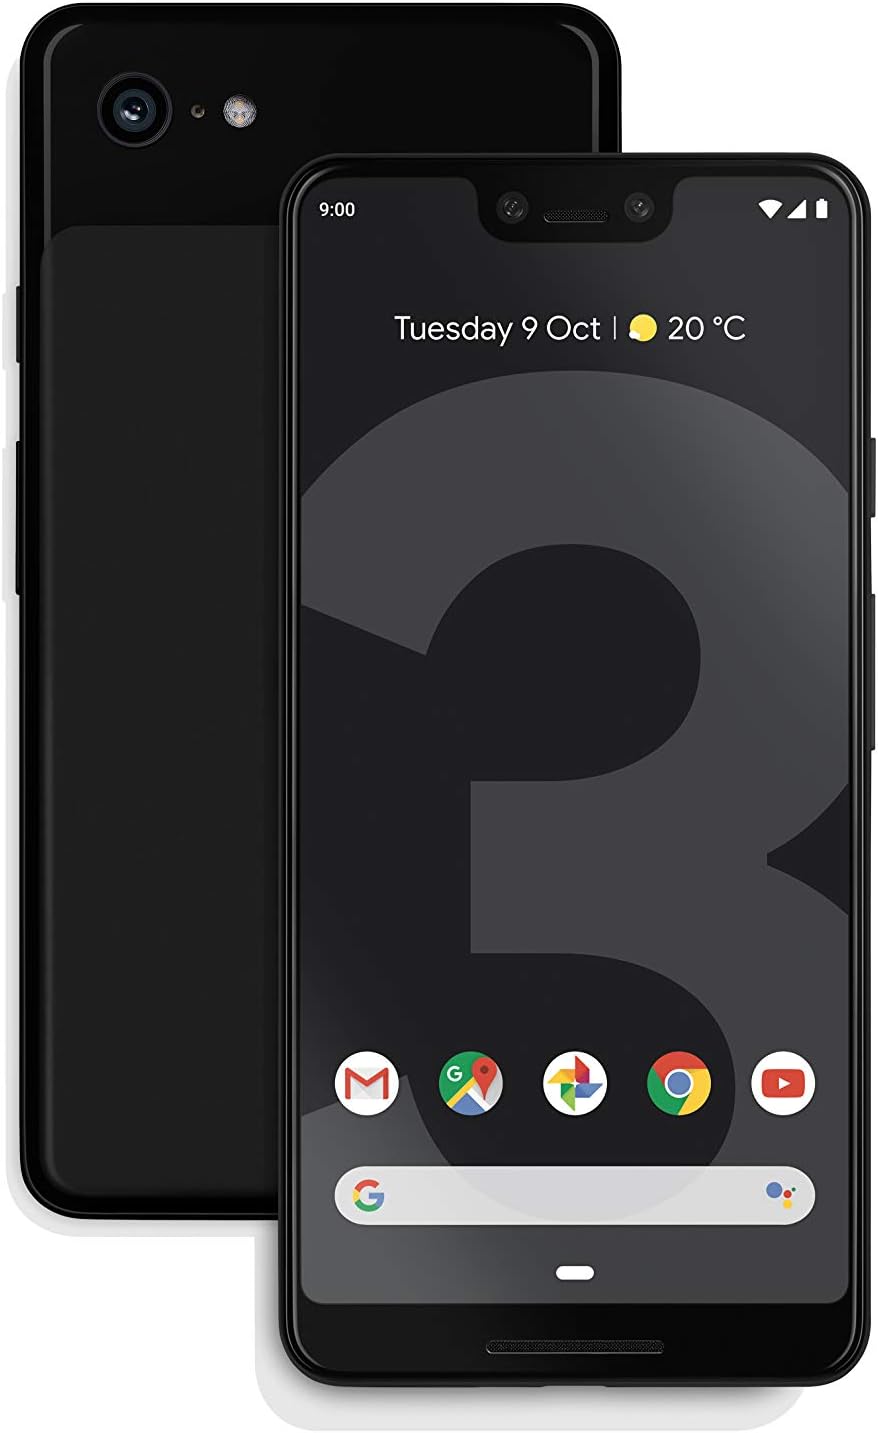 Google Pixel 3 XL 64GB - Just Black - Locked Verizon